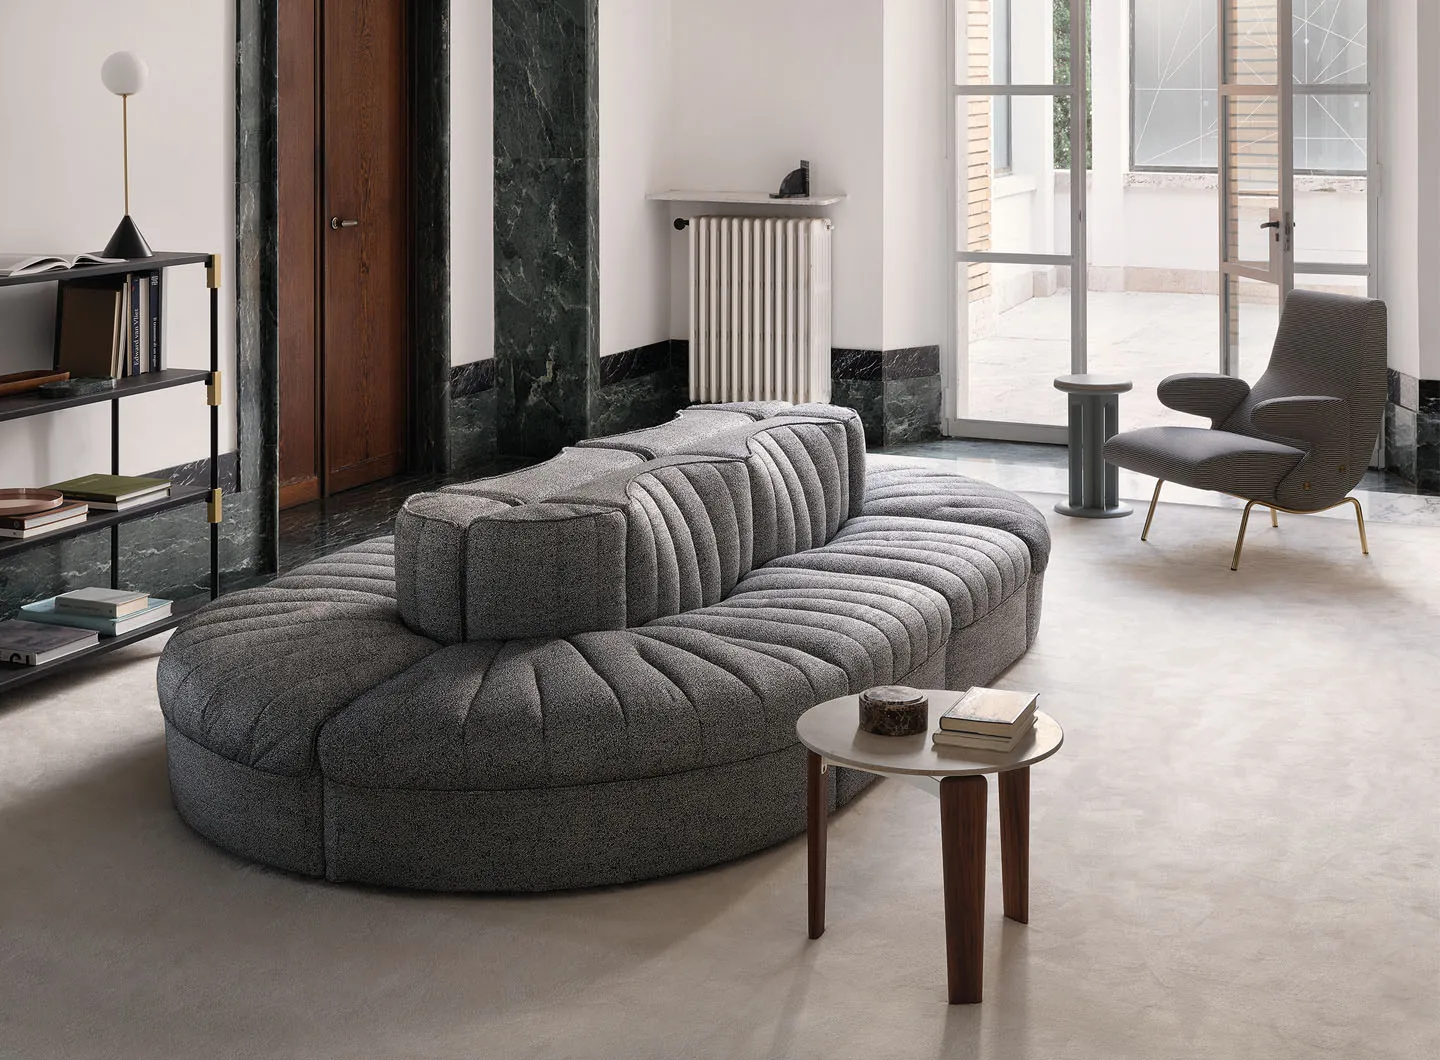 9000 design Tito Agnoli and Delfino armchair design Erberto Carboni